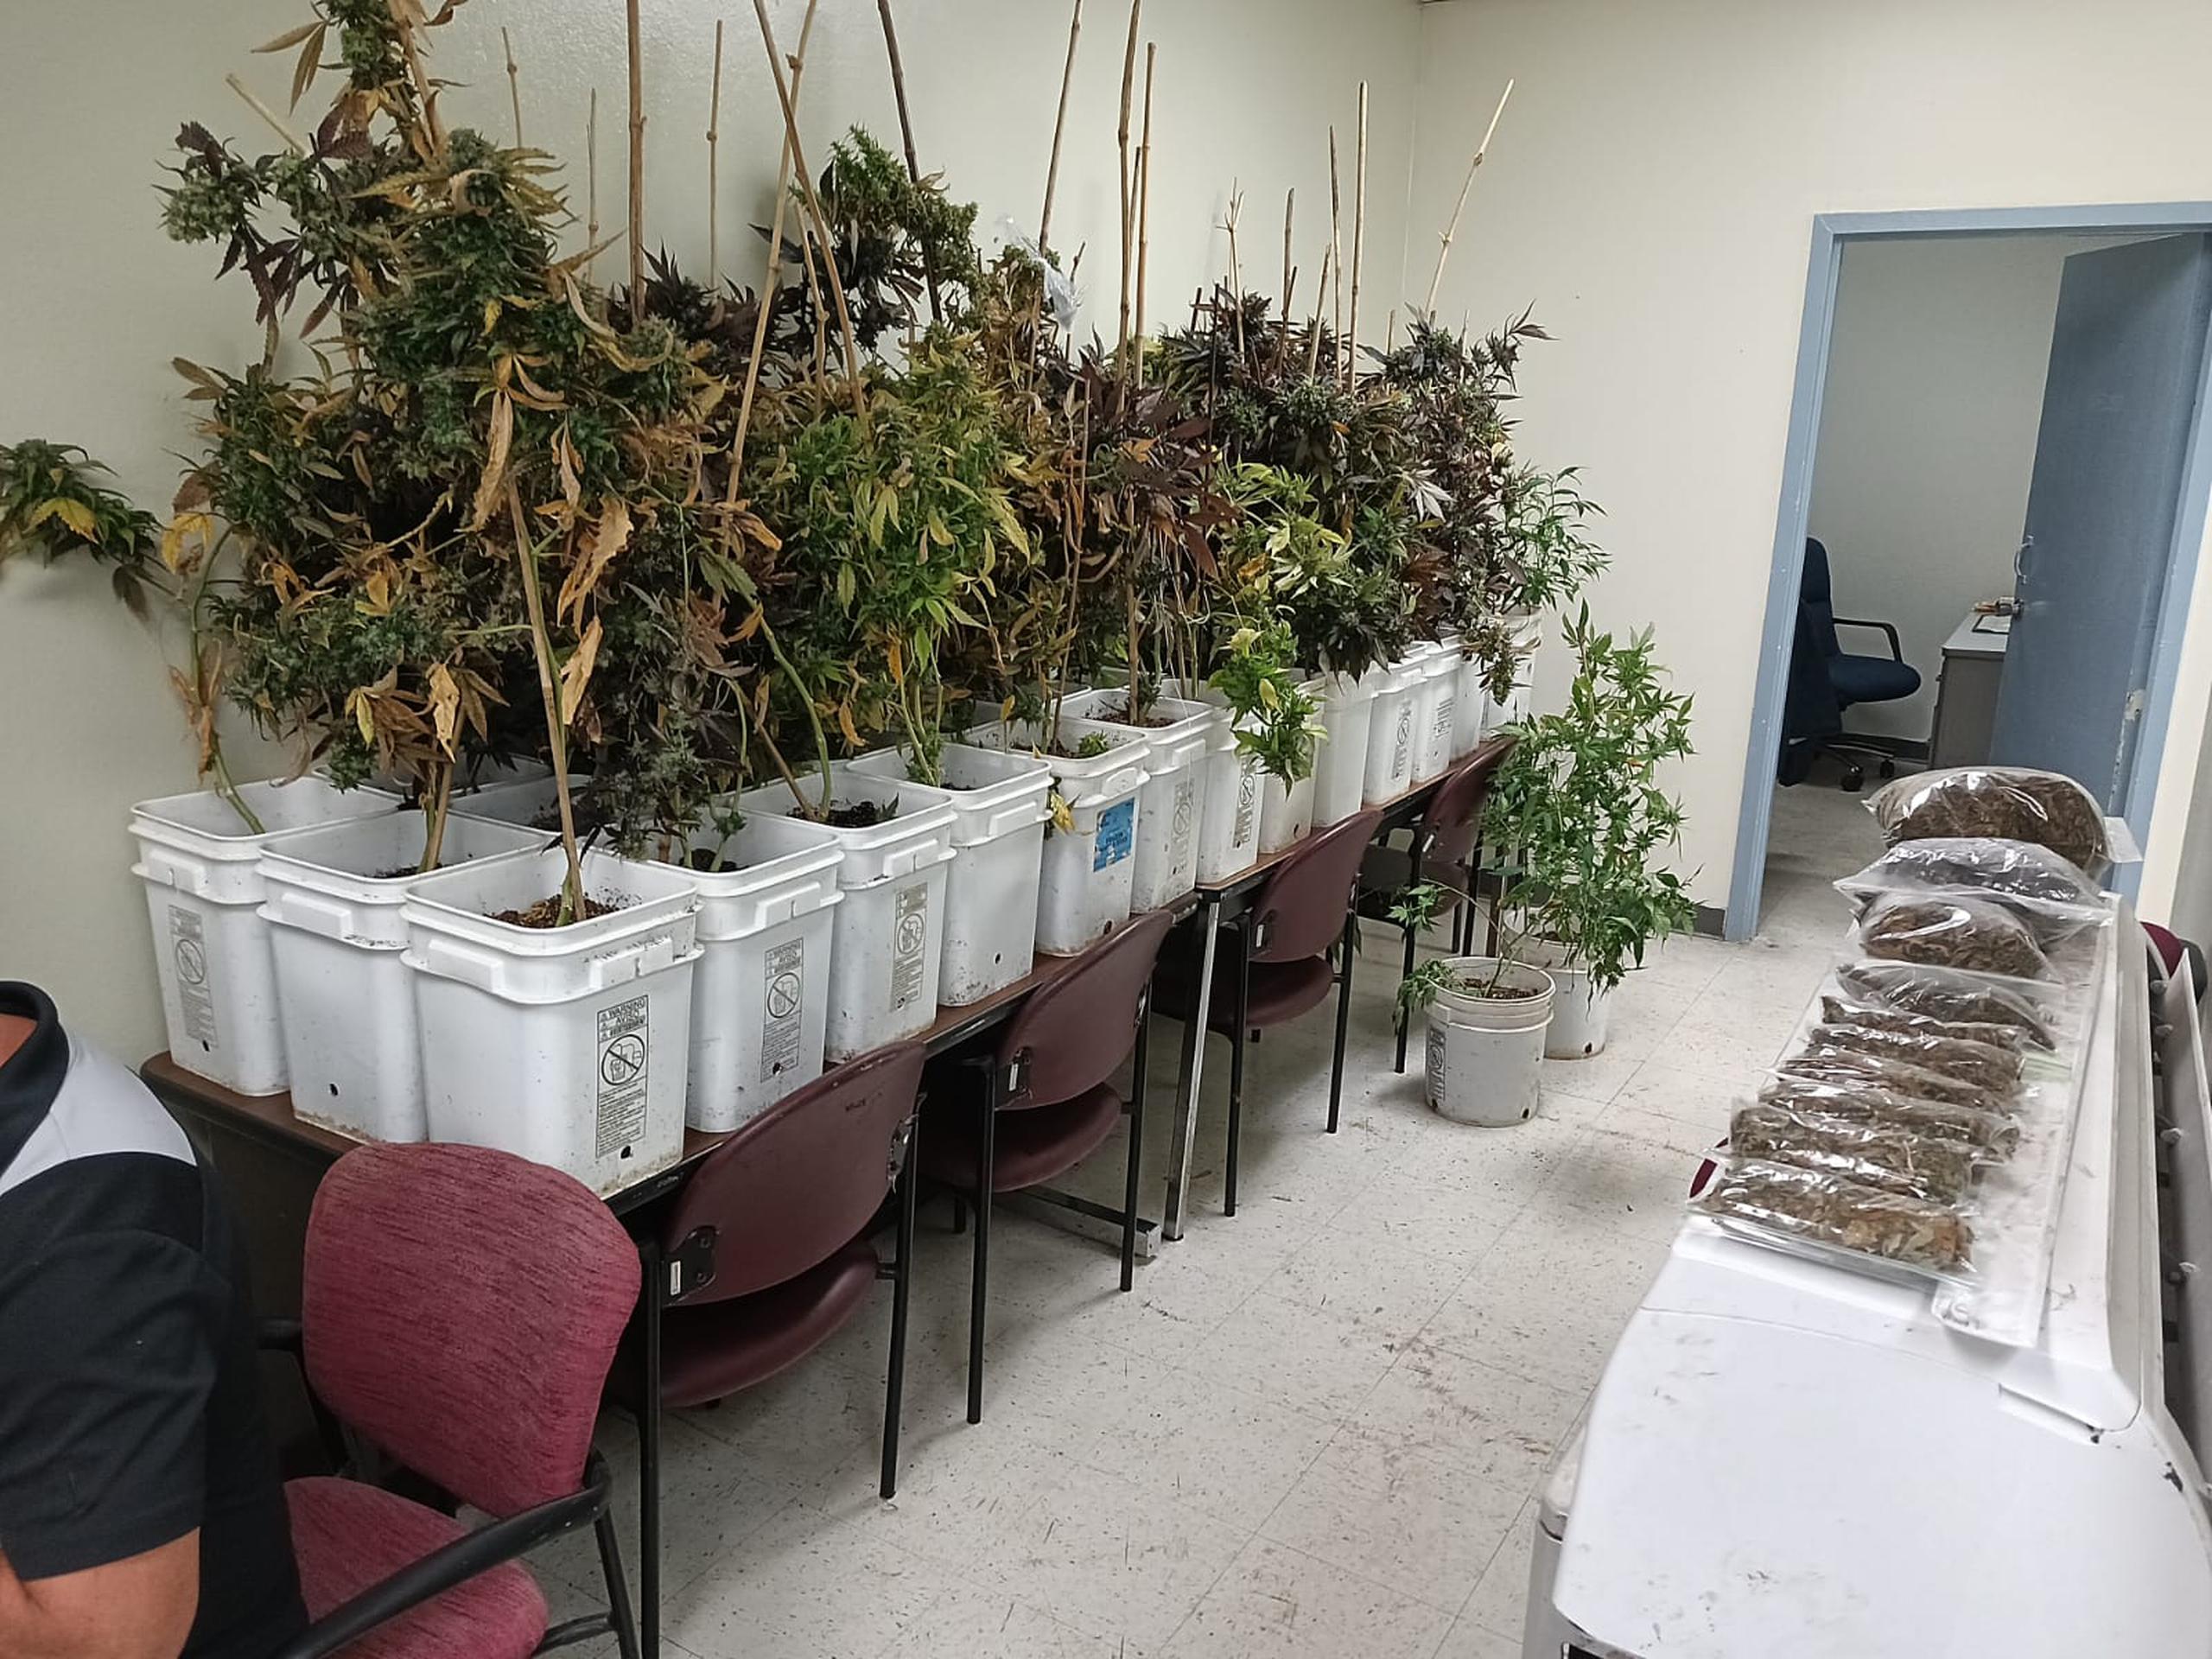 Un invernadero con 142 plantas de marihuana fue ocupado en un taller de reparación de transmisiones de vehículos, en el sector Hoyo del barrio Lavadero, en Hormigueros.